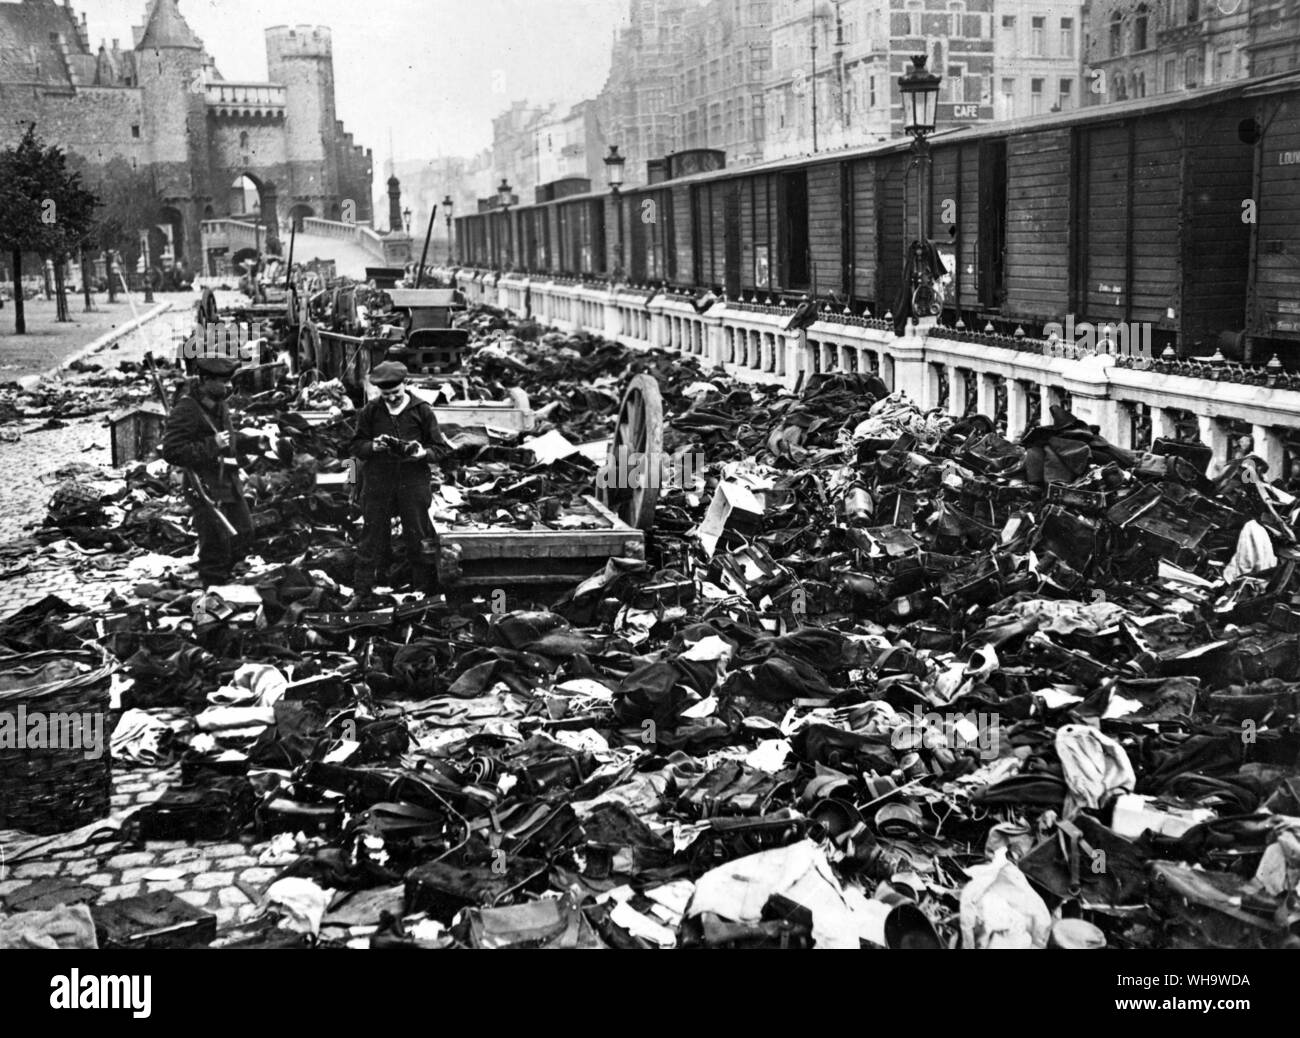 WW1: Dump of captured equipment in Antwerp, Belgium. Stock Photo